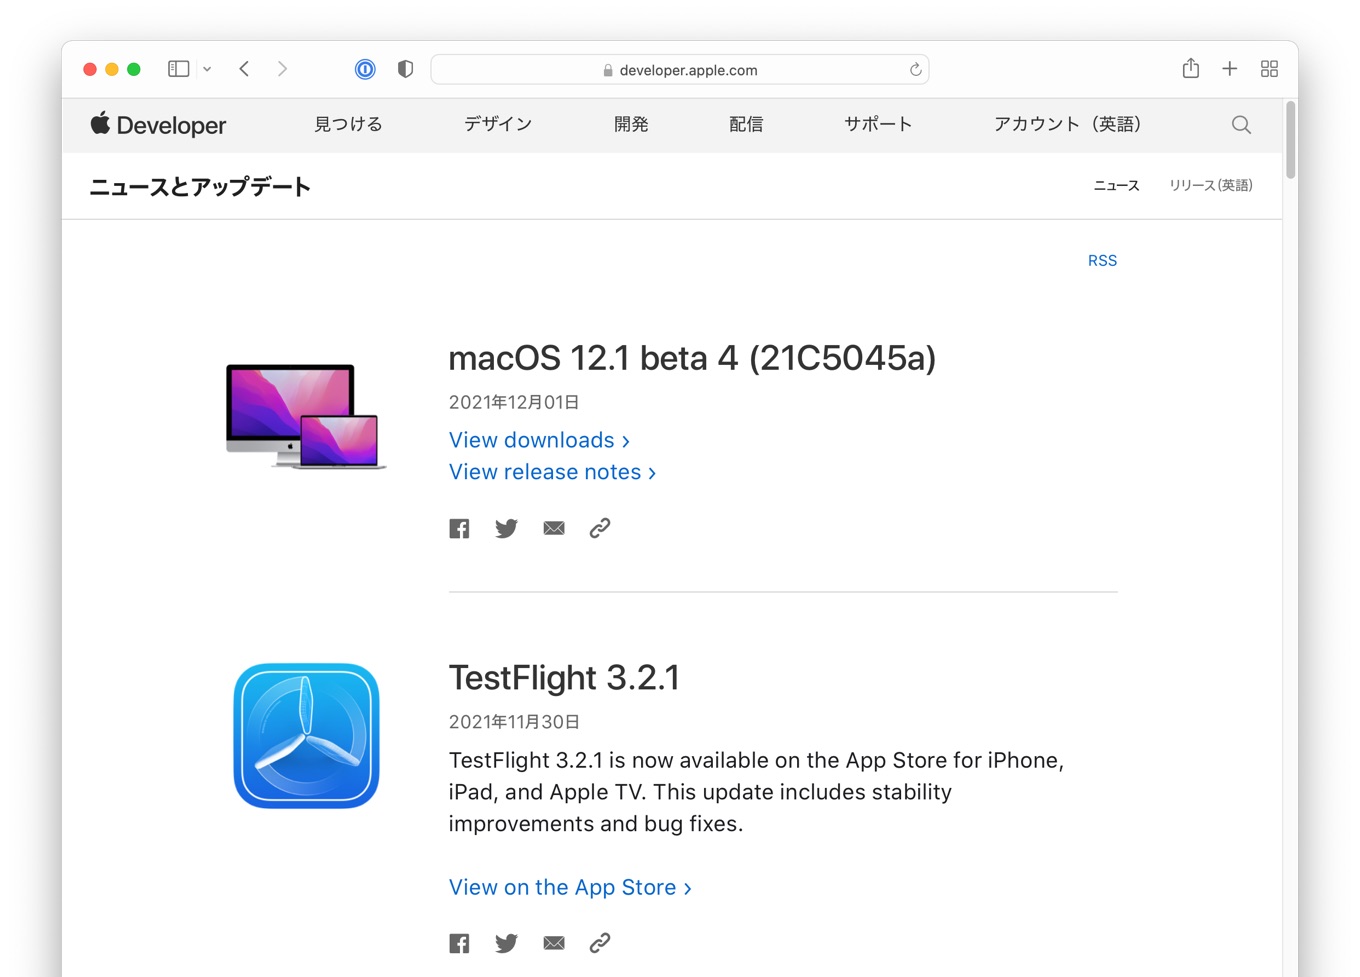 macOS 12.1 beta 4 21C5045a